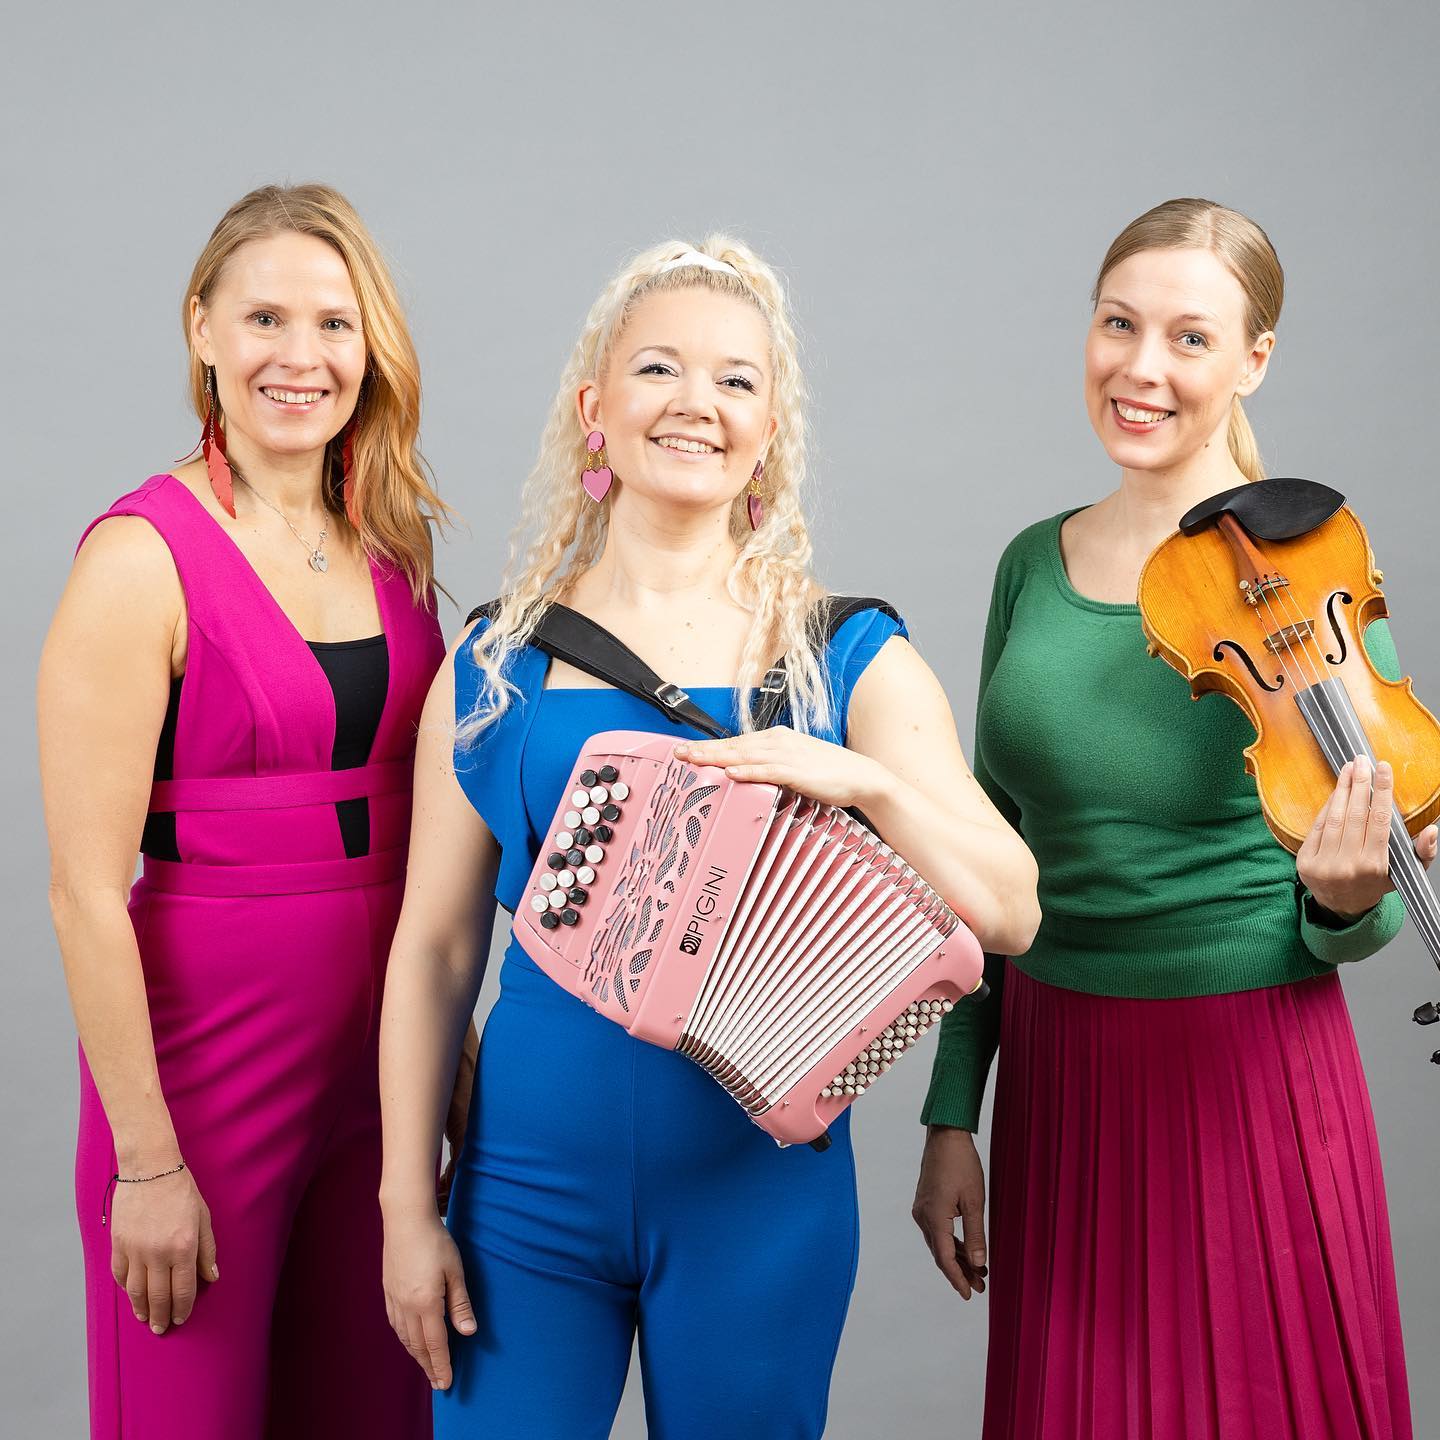 Kolme naista, keskimmäisellä on vaaleanpunainen pikkuhaitari ja oikeanpuoleisella viulu.